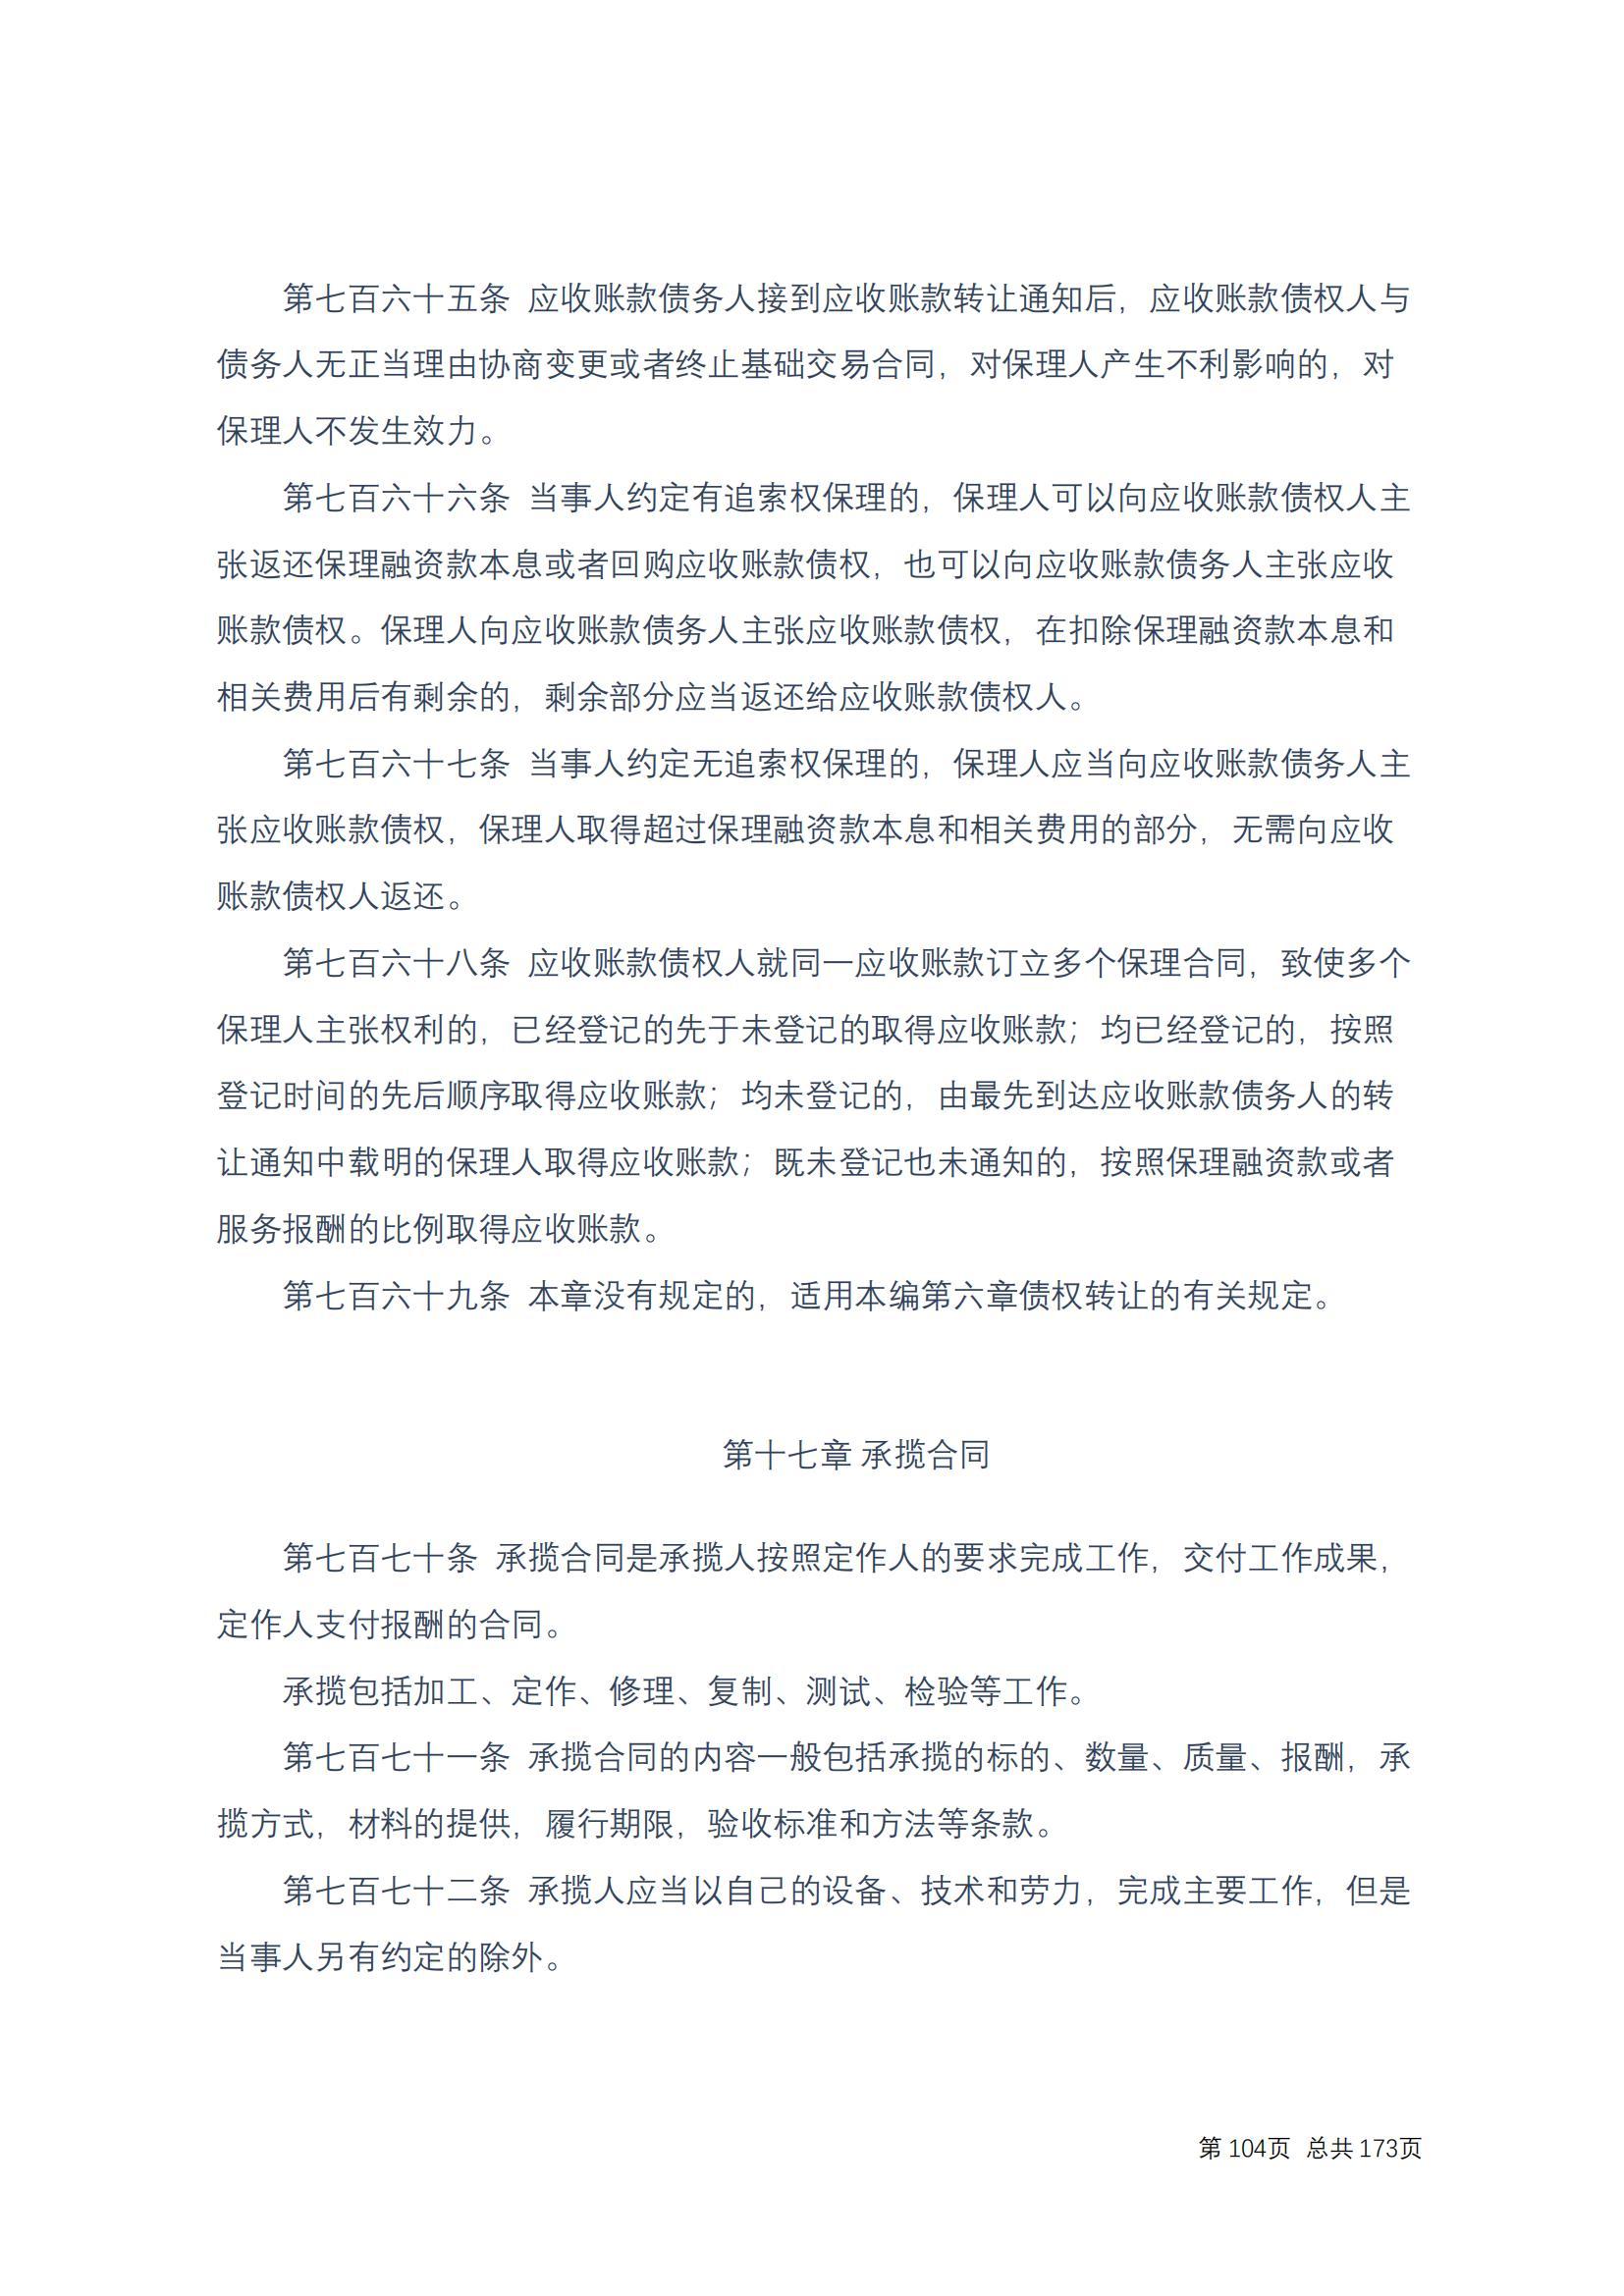 中华人民共和国民法典 修改过_103